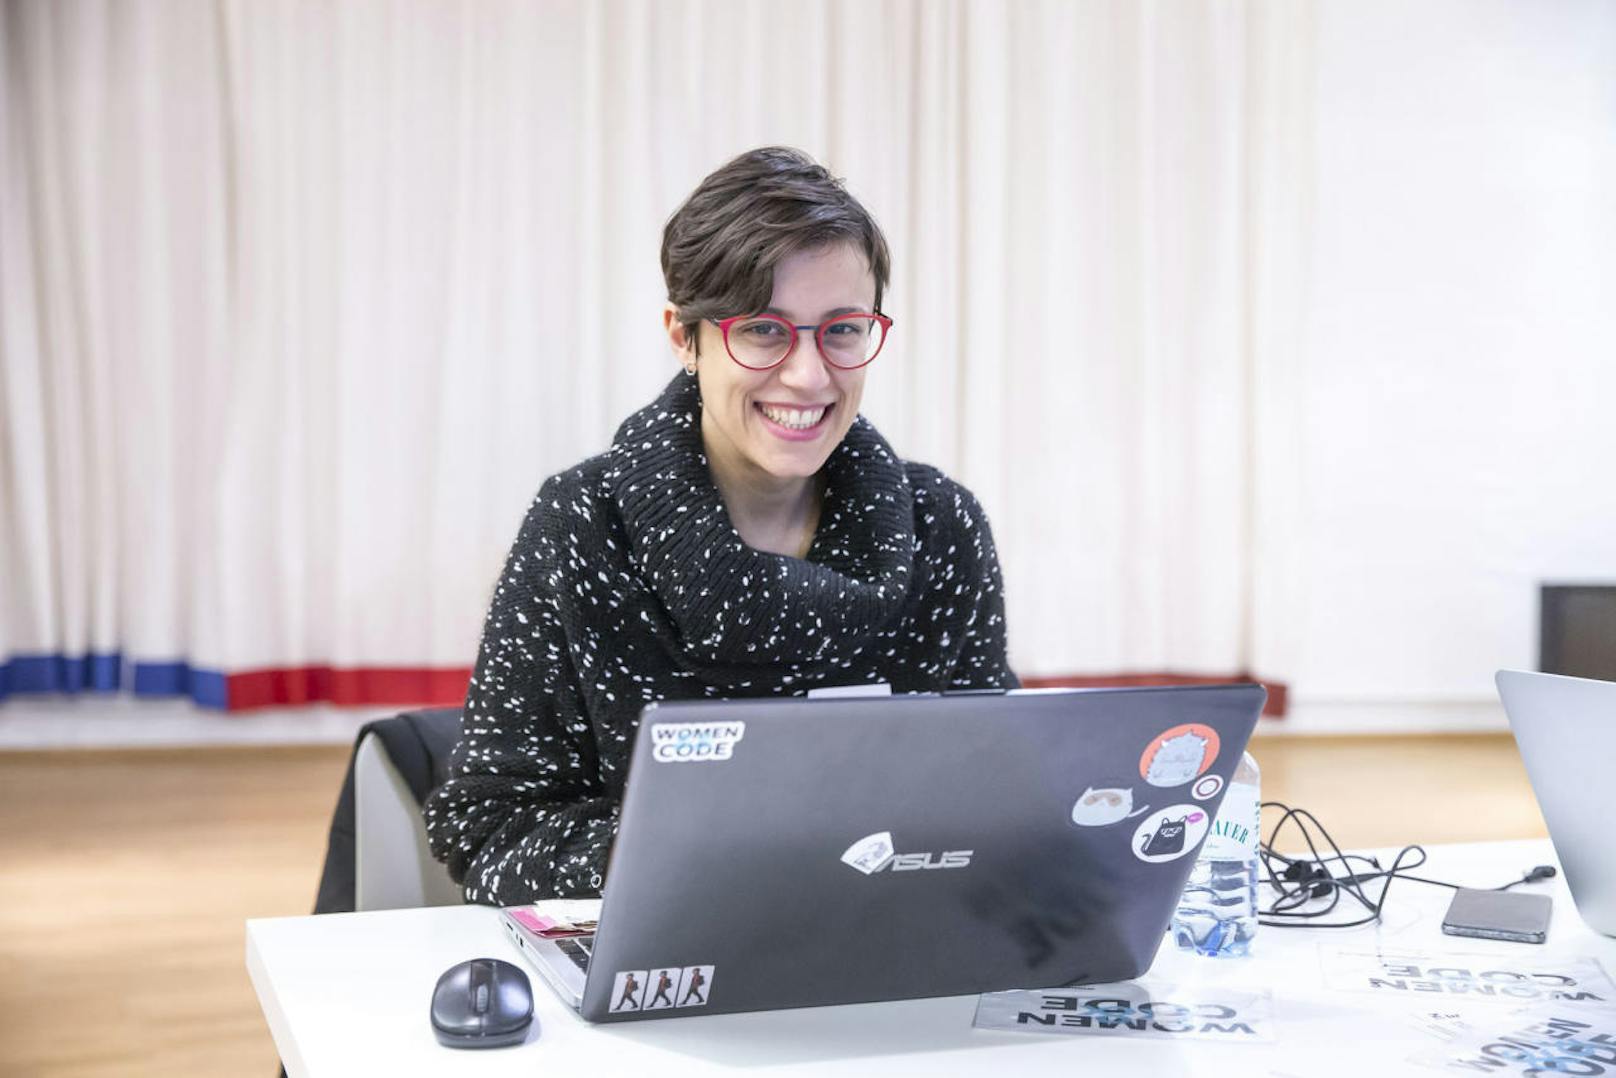 Viviana Gigi (36) will die Sprache der Programmierer lernen um die Kunstgeschichte in die Zukunft zu holen.